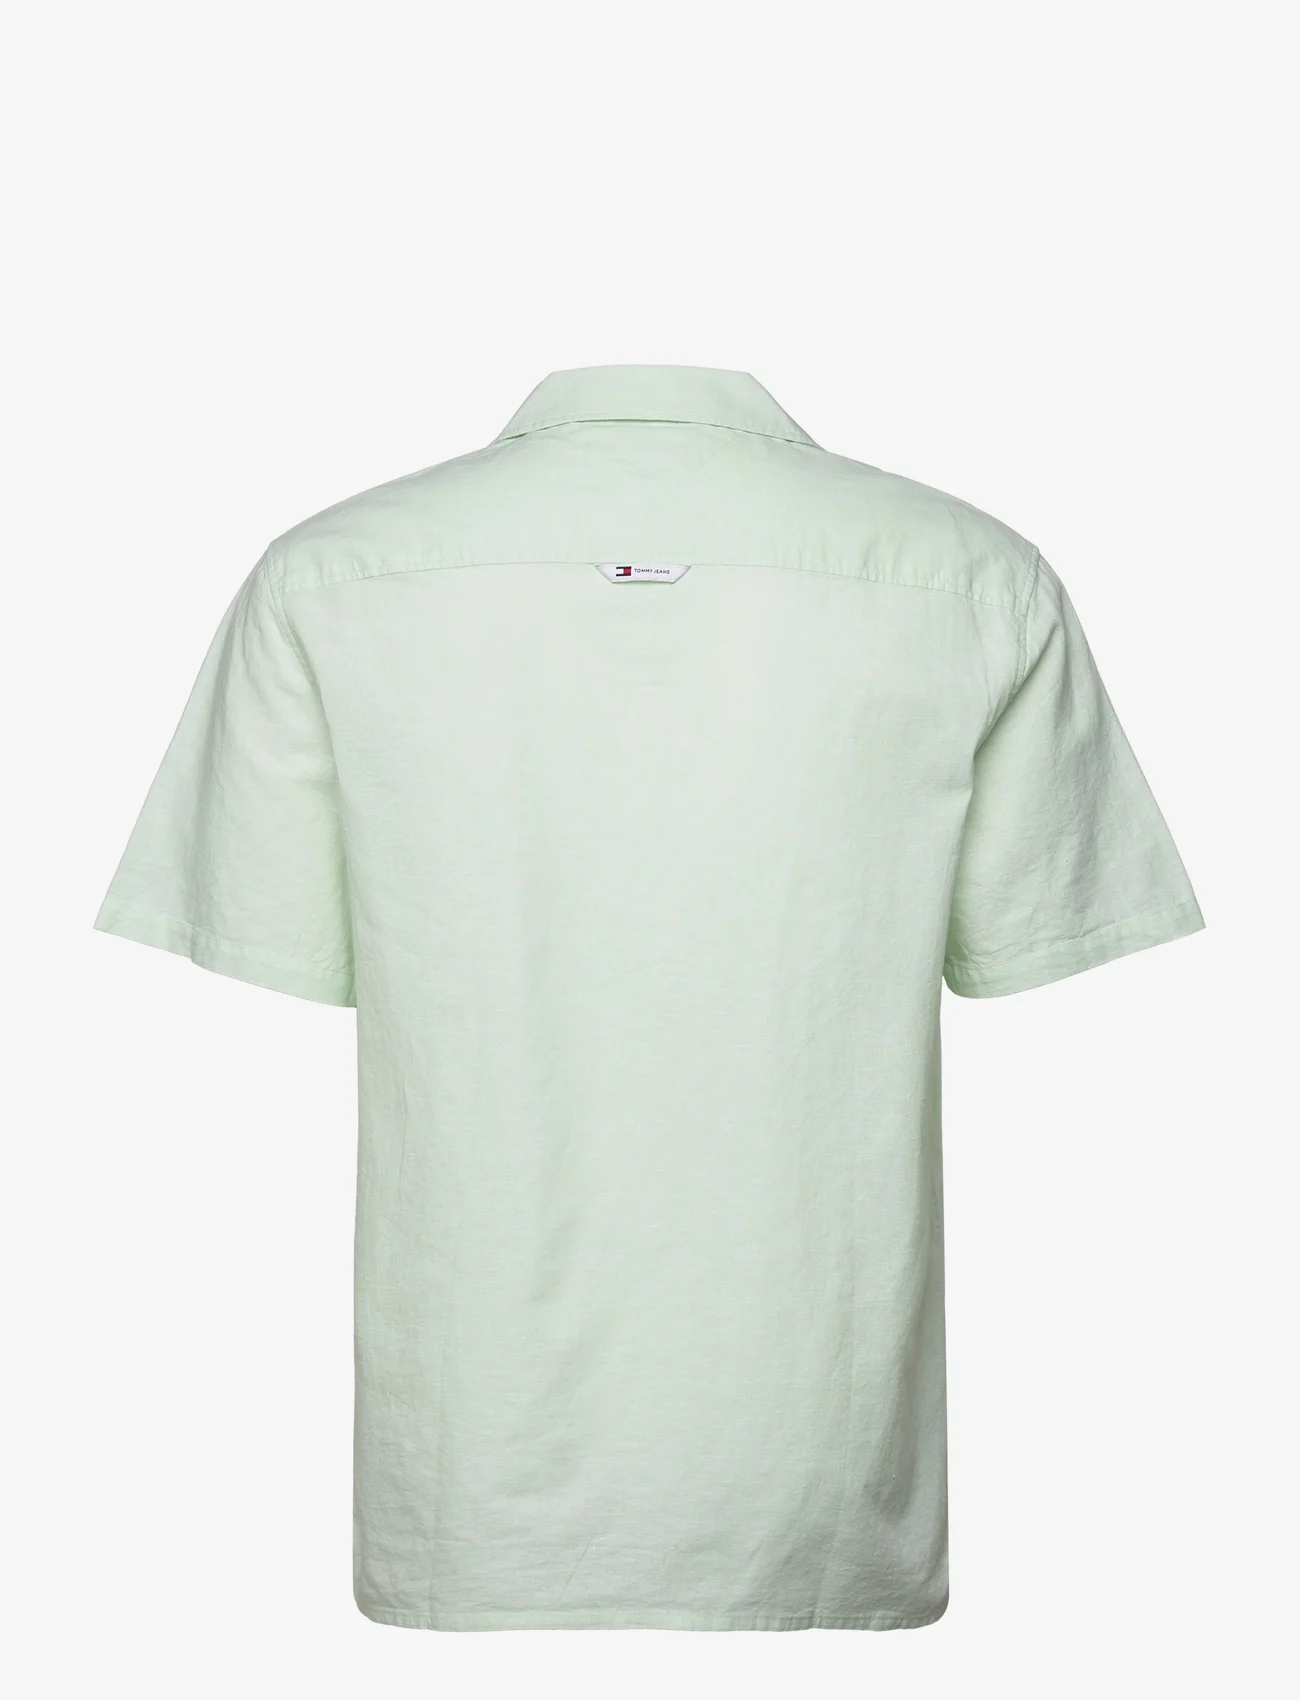 Tommy Jeans - TJM LINEN BLEND CAMP SHIRT EXT - kortärmade t-shirts - opal green - 1